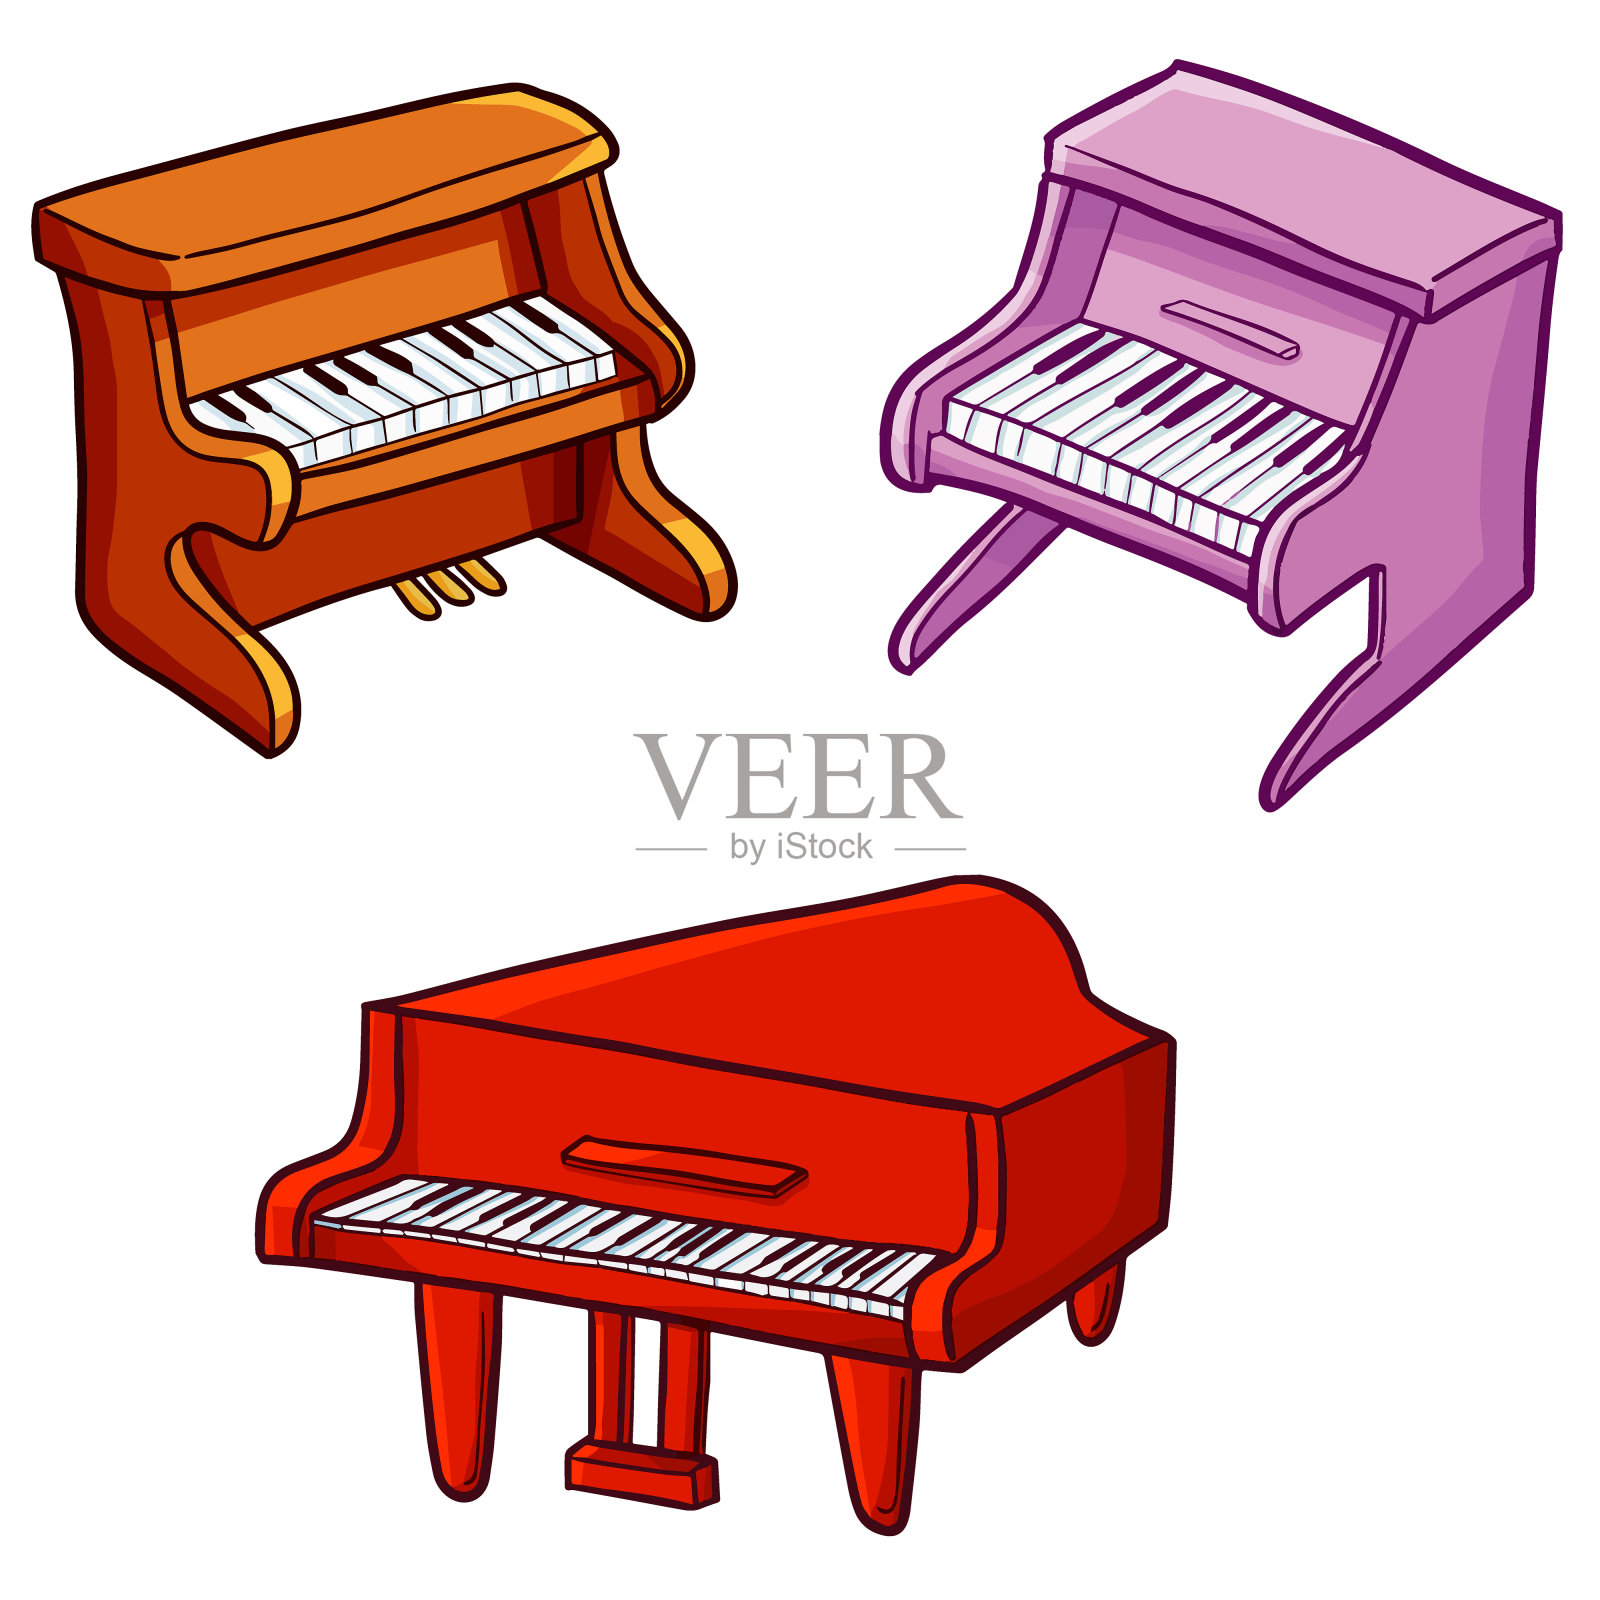 卡通风格的钢琴设计元素图片